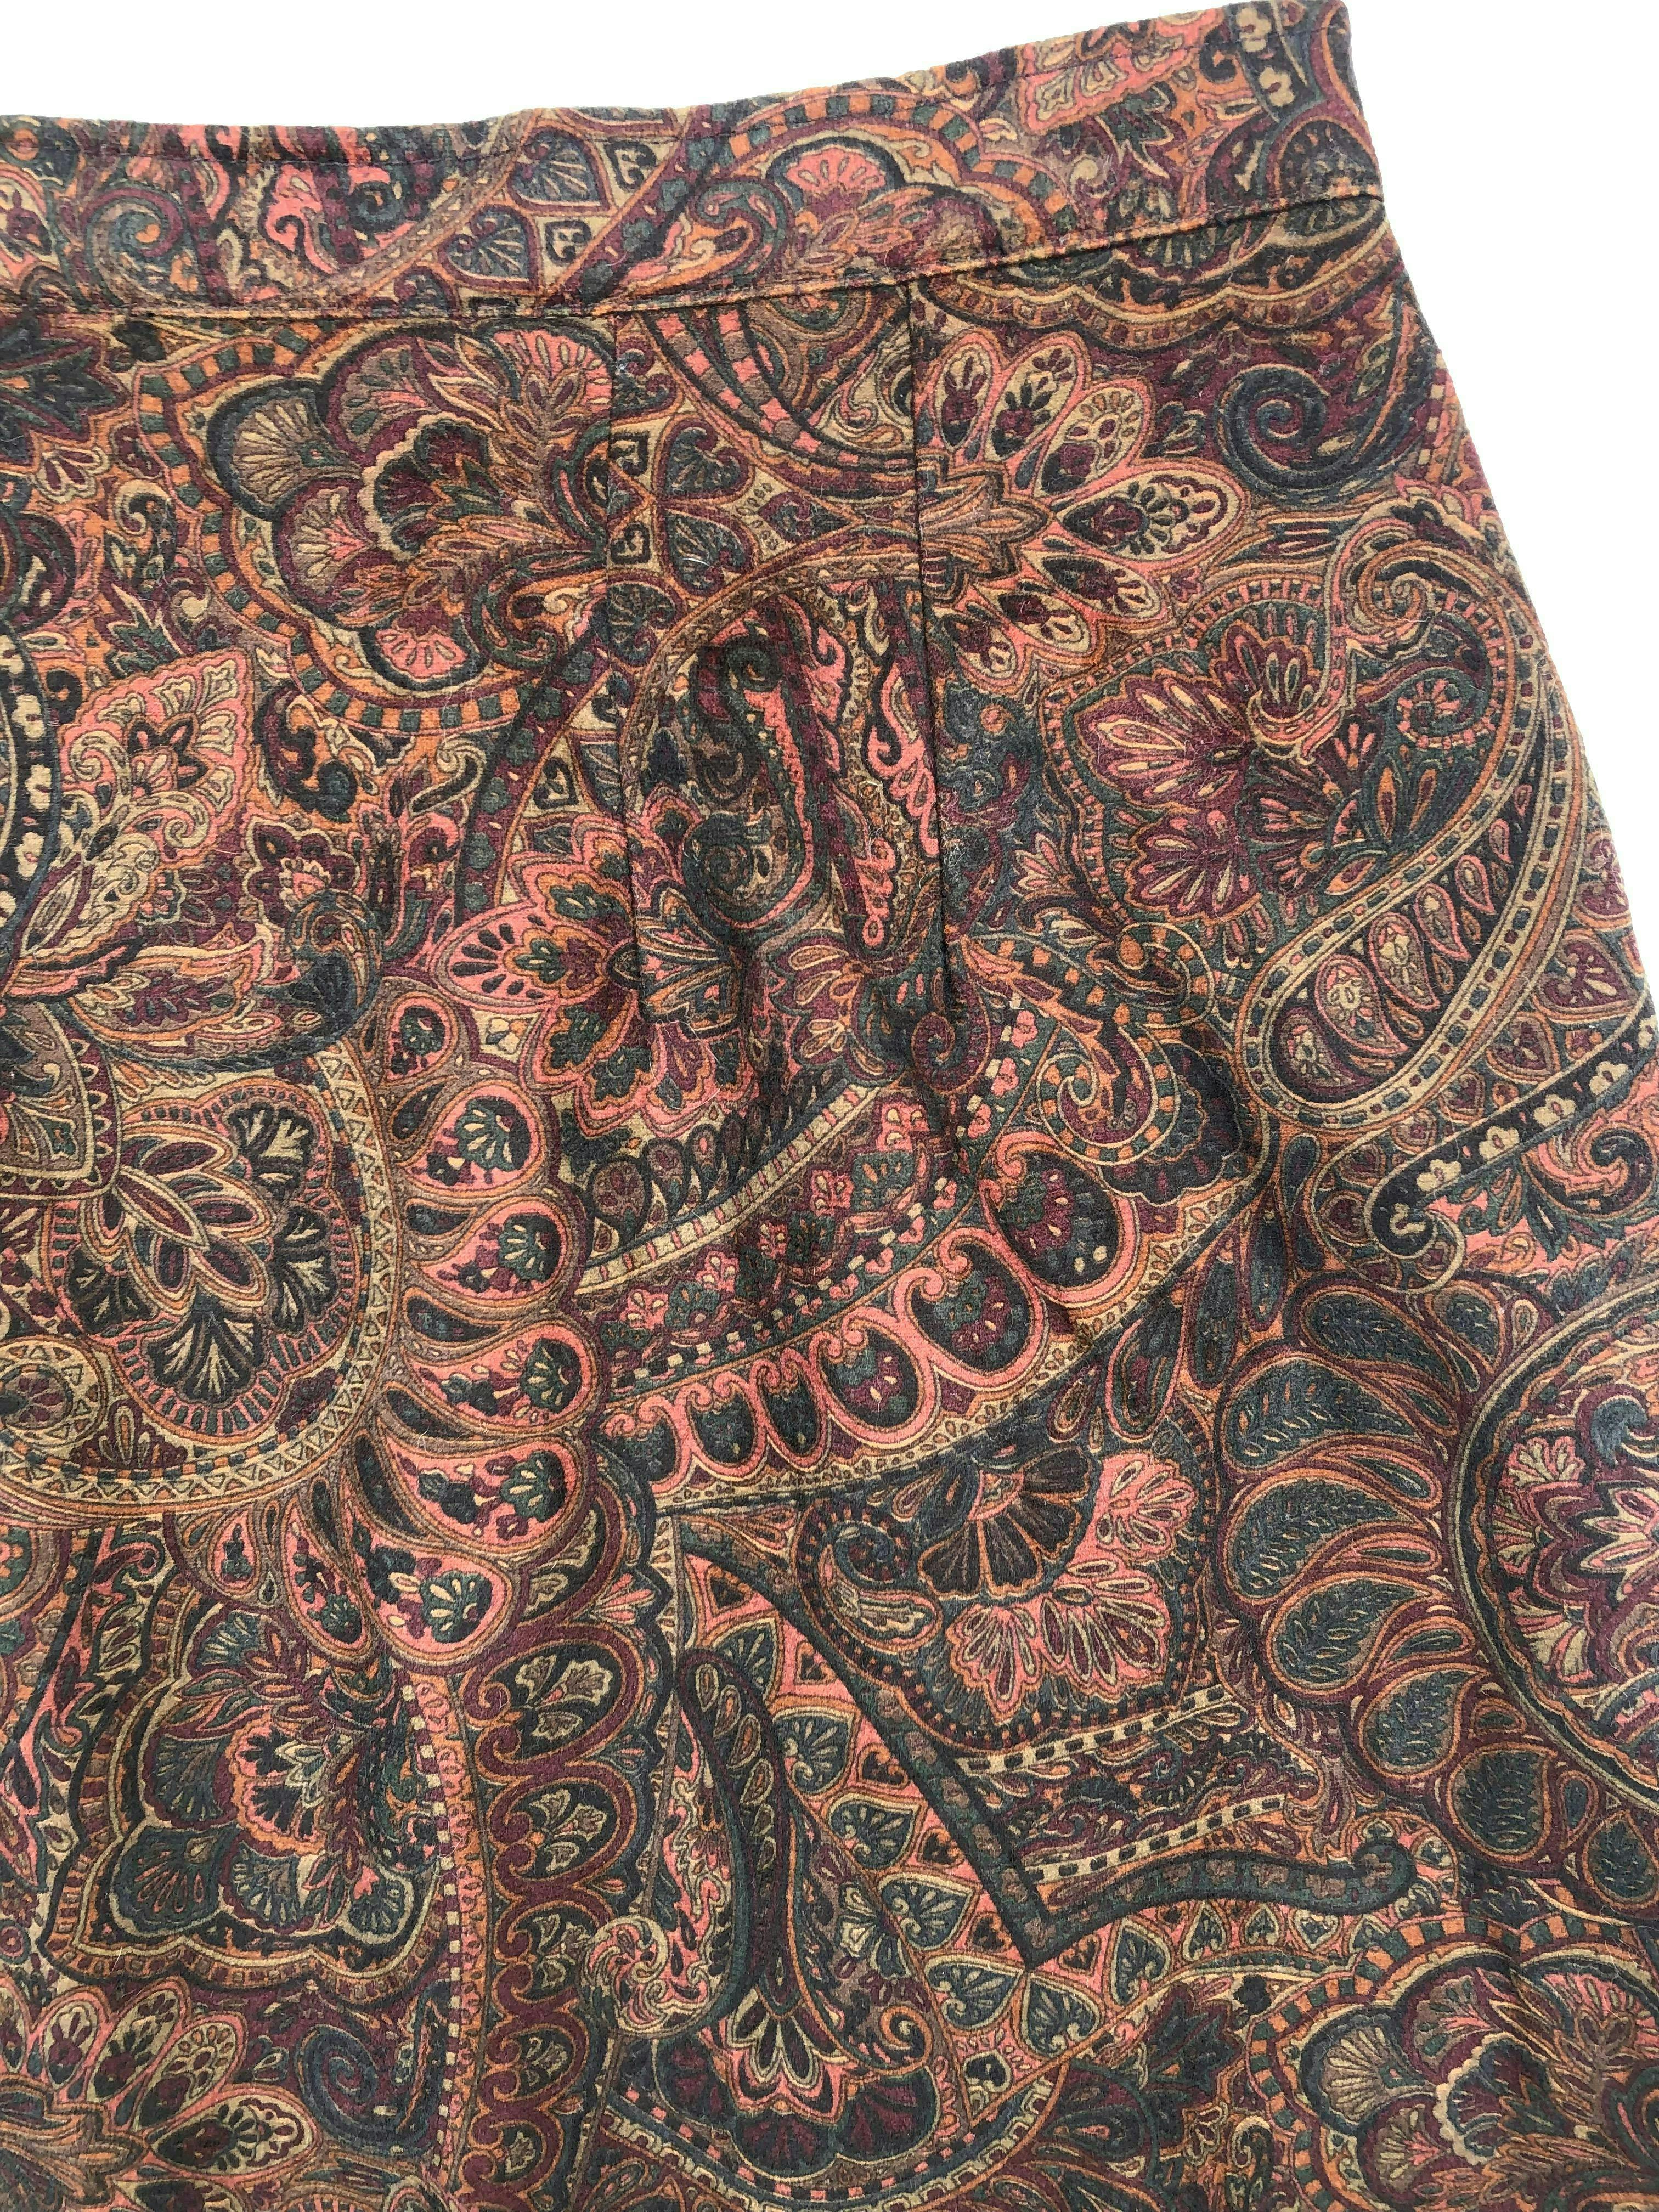 Falda vintage estampado barroco en tonos tierra, forrada, corte en A, cierre y botón posterior. Cintura 76cm Largo 78cm